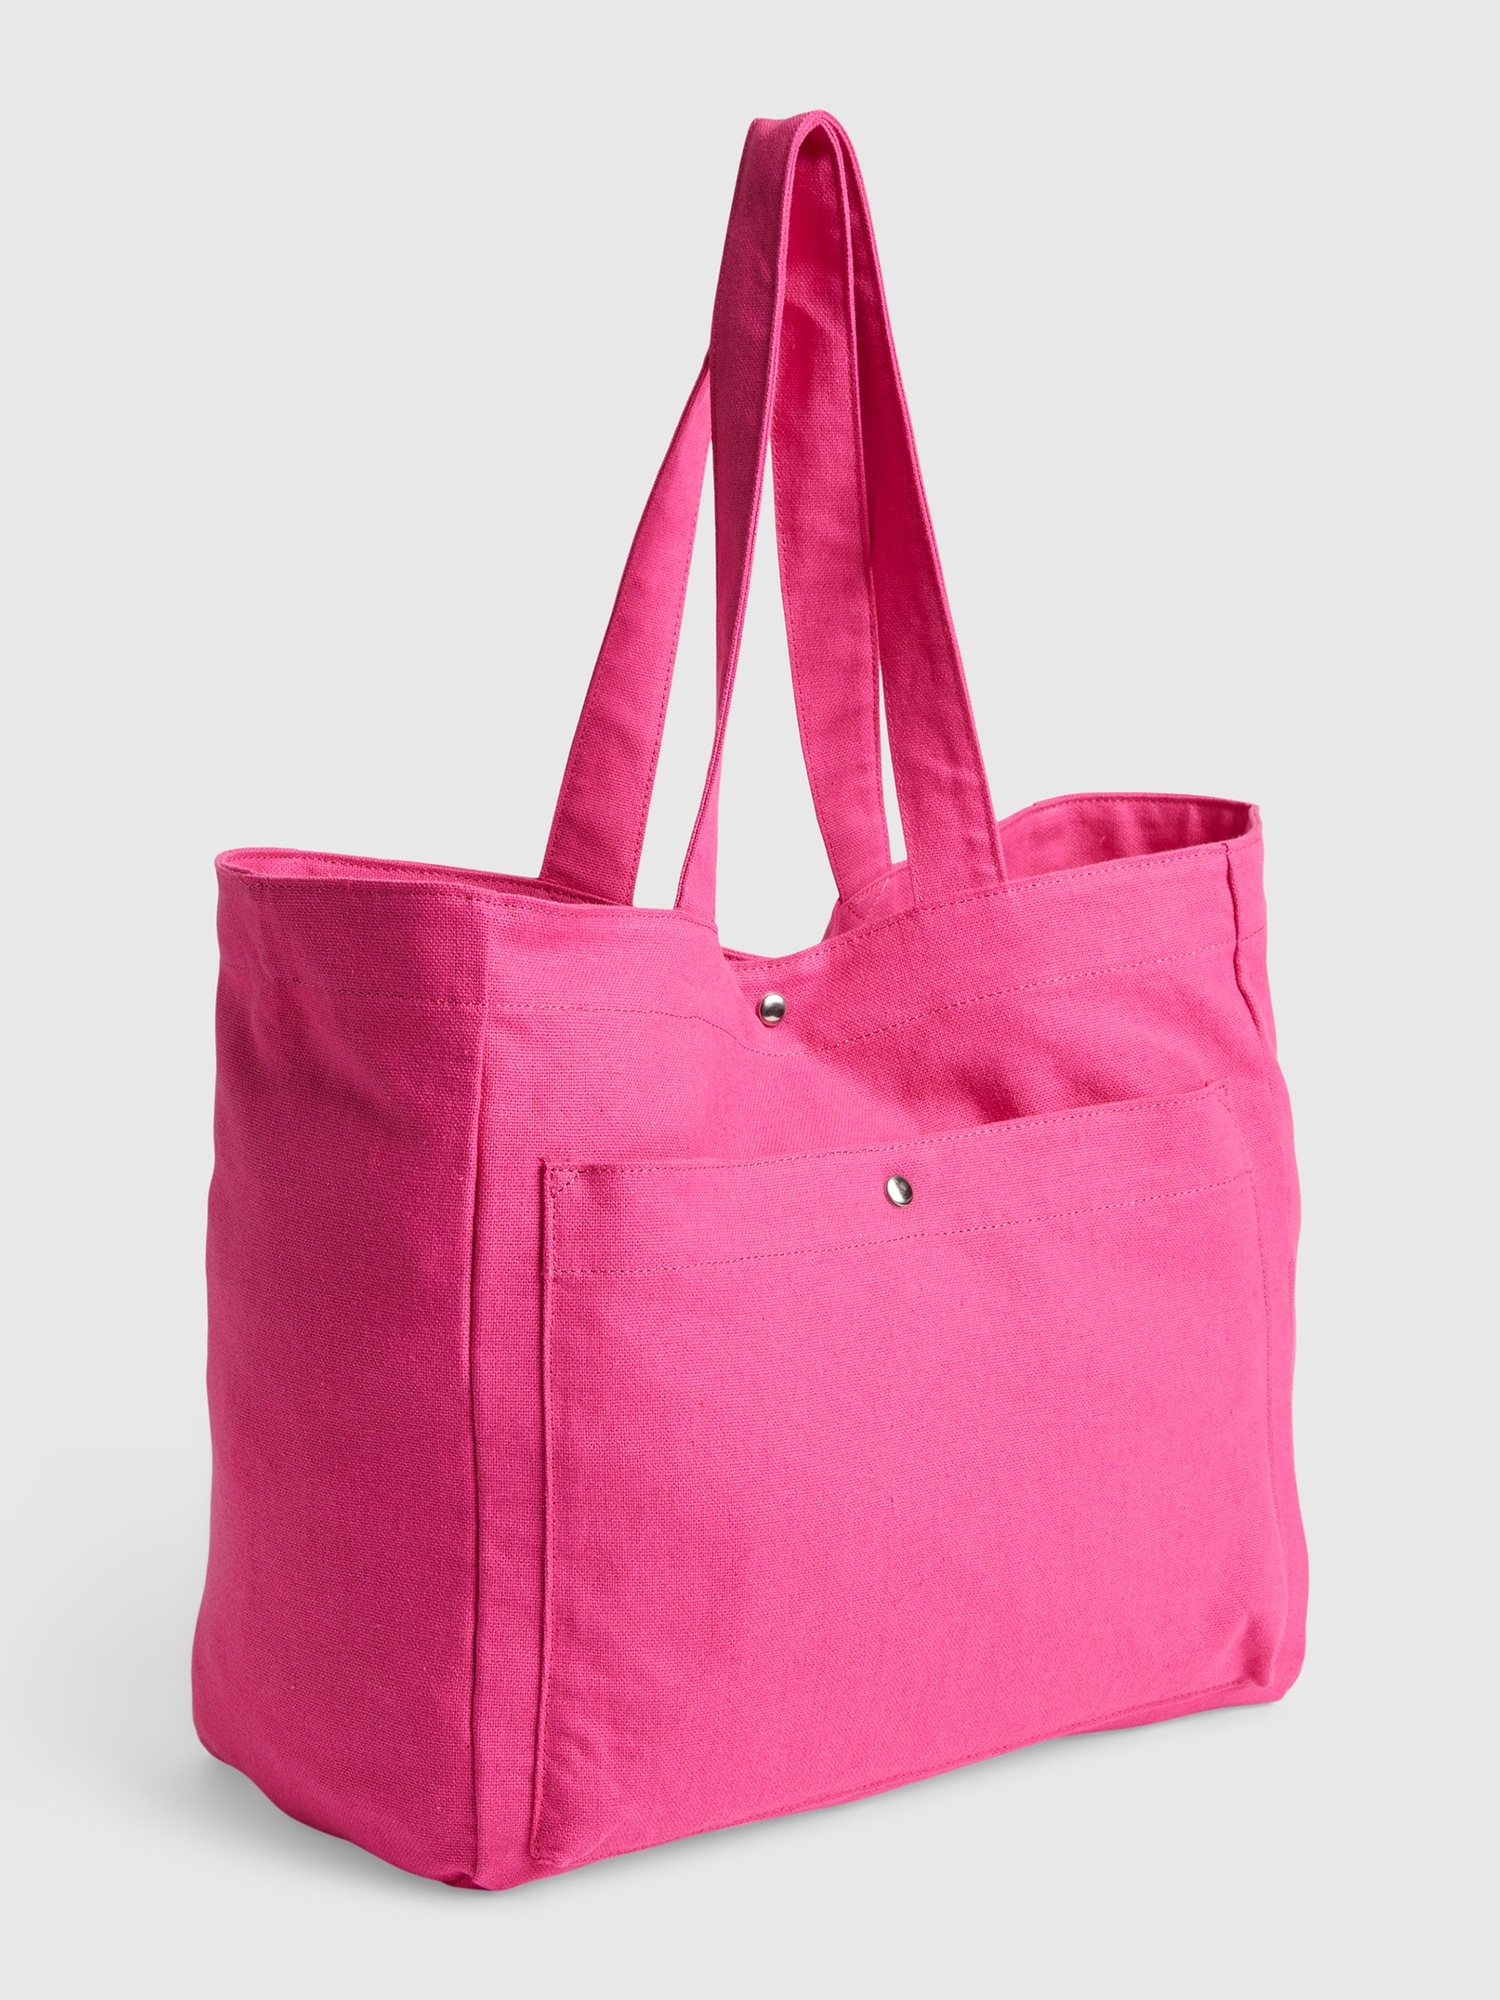 Gap Tote Bag pink. 1